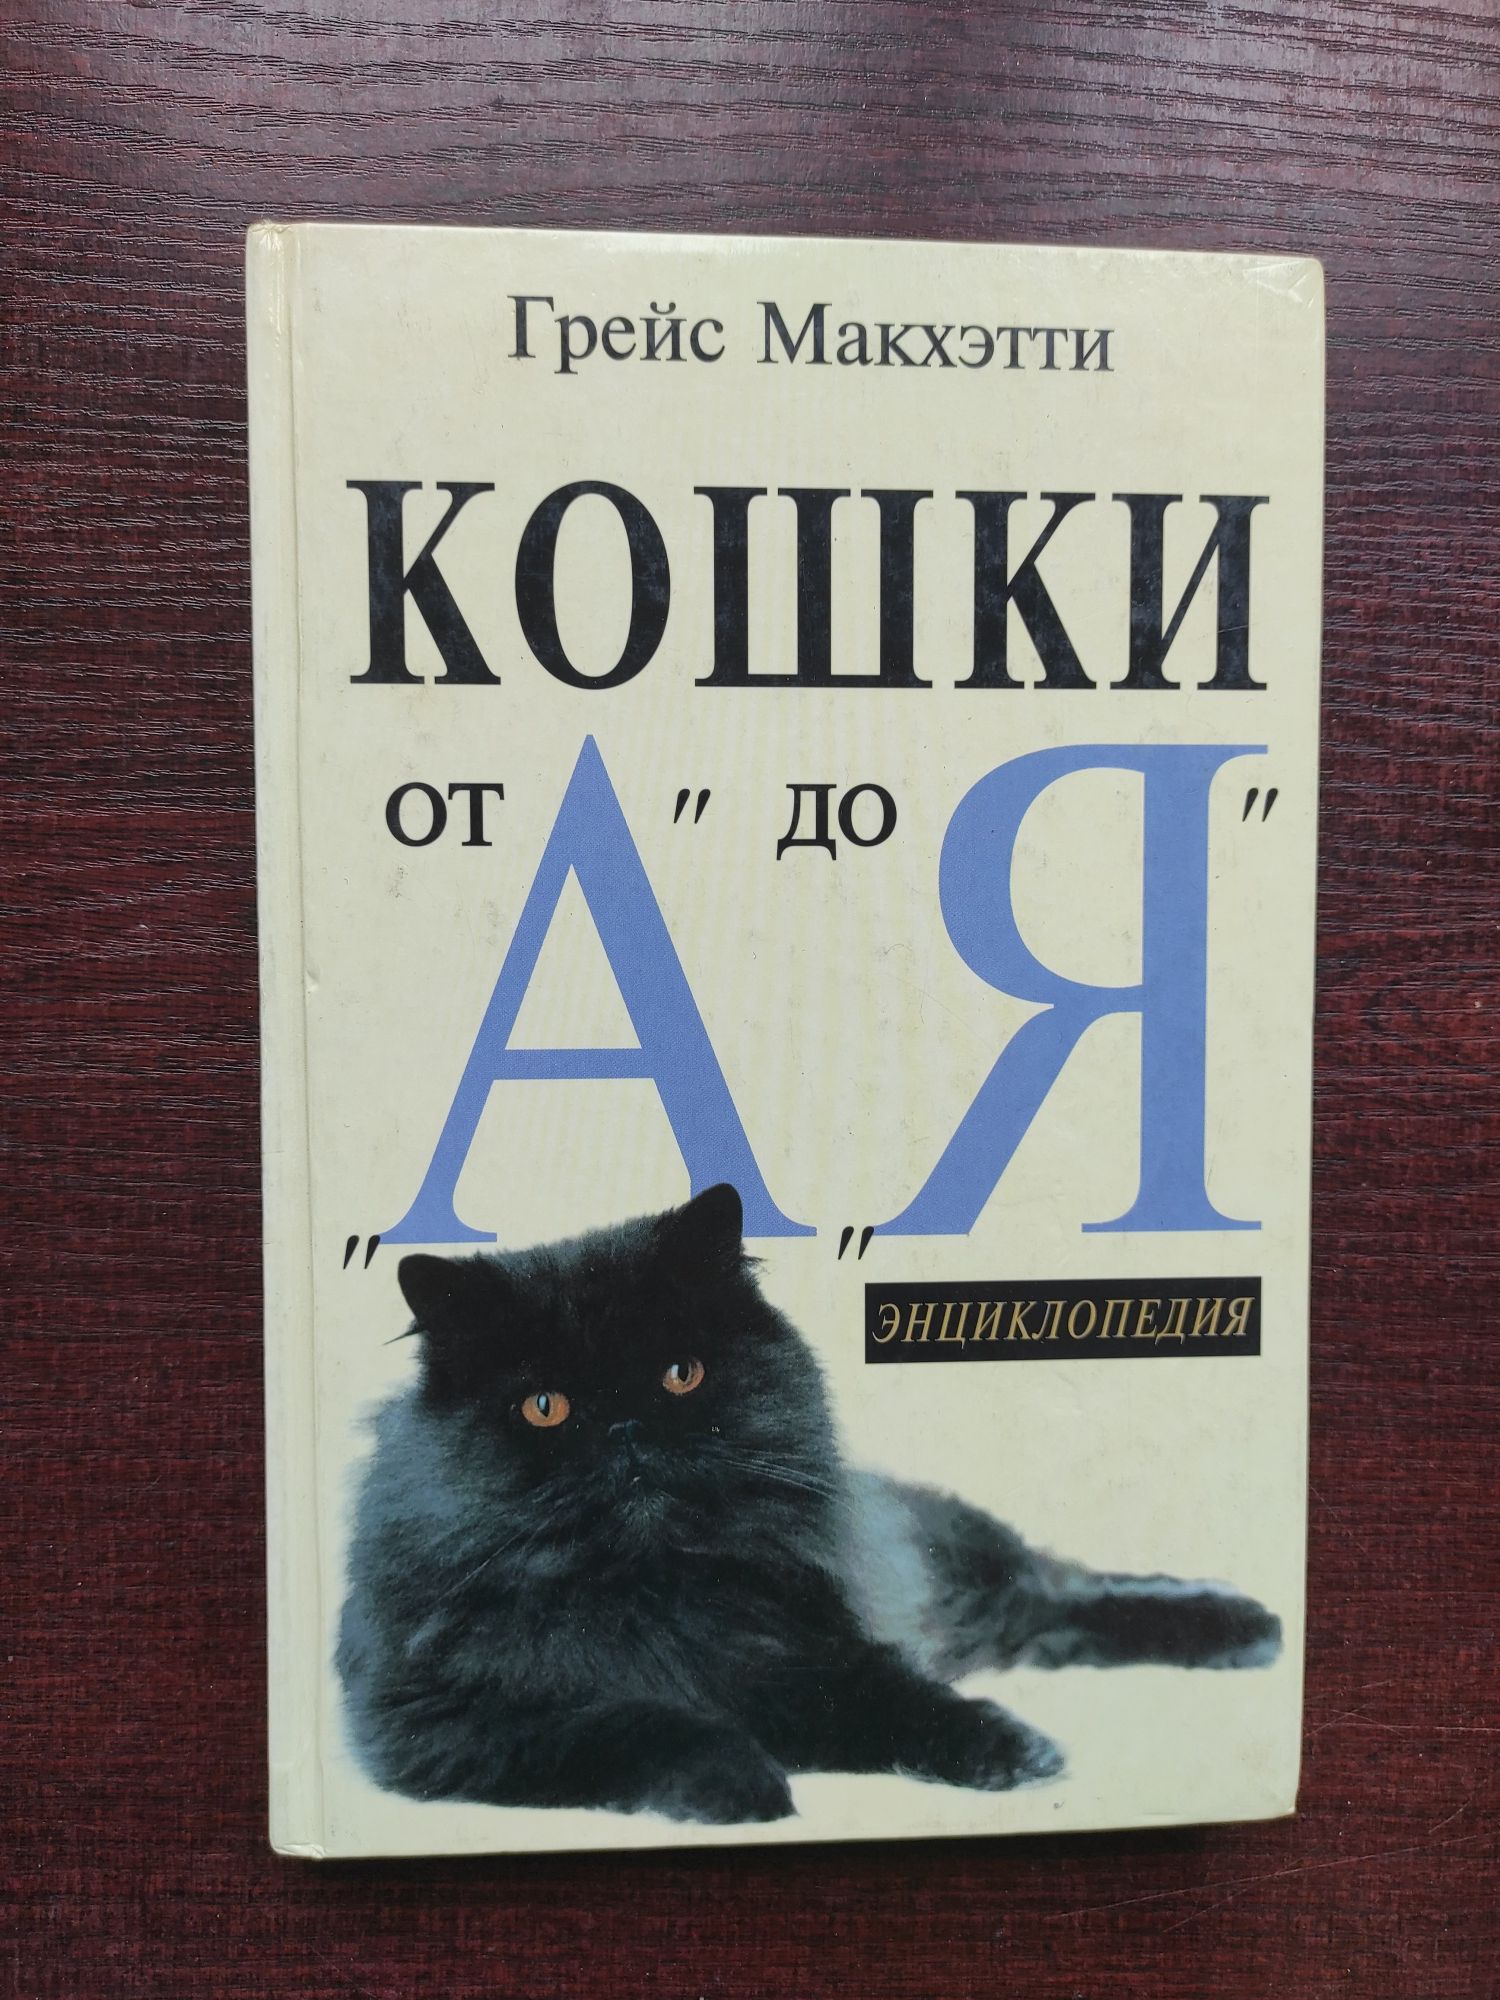 Энциклопедия Кошки от А до Я